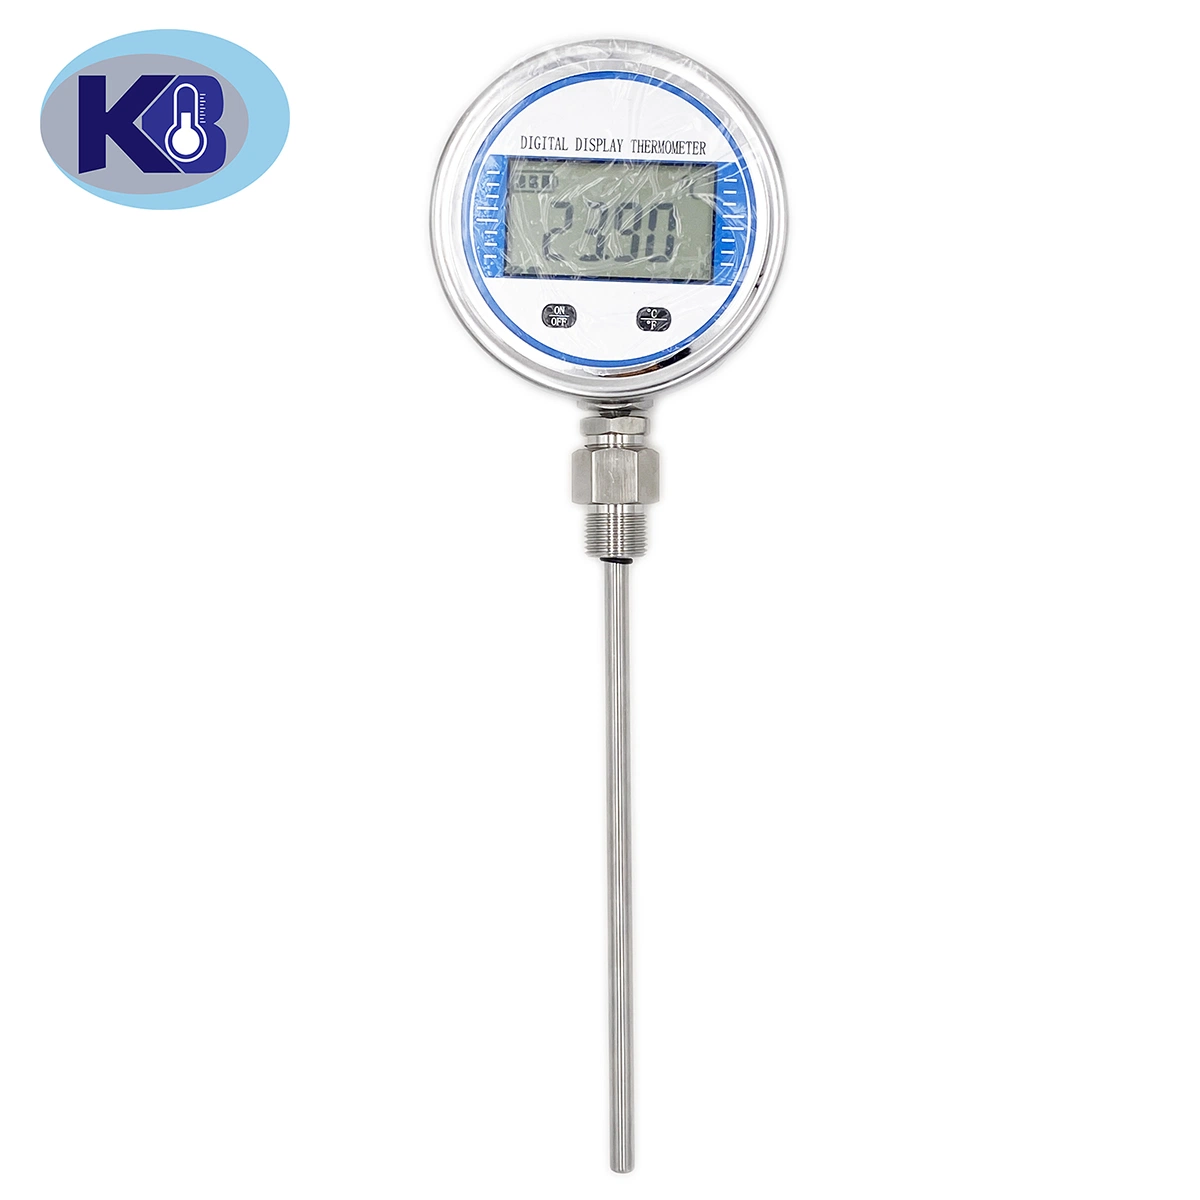 Industrielle Edelstahl Druck-Typ Digital-Anzeige Thermometer Backofen Kapillare Thermometer